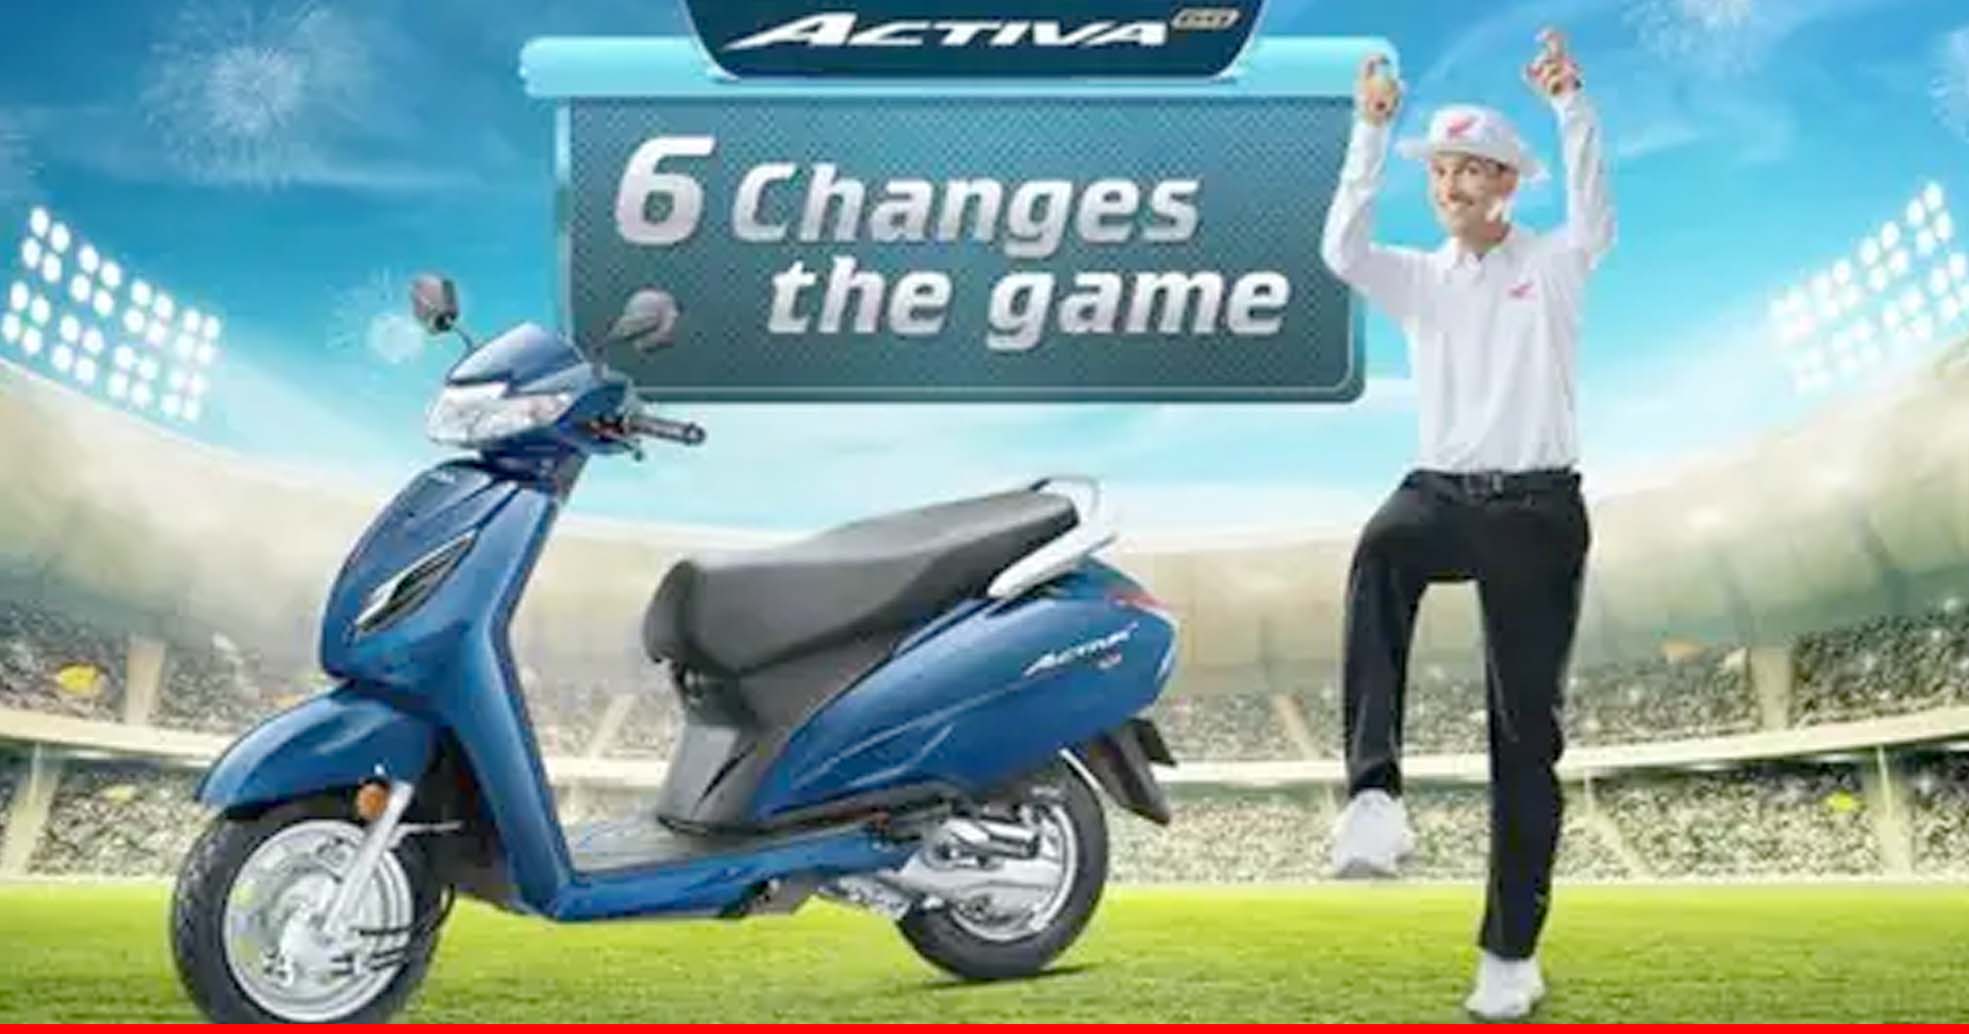 Honda देश की बेस्ट सेलिंग स्कूटर Activa 6G की खरीद पर दे रही शानदार डील